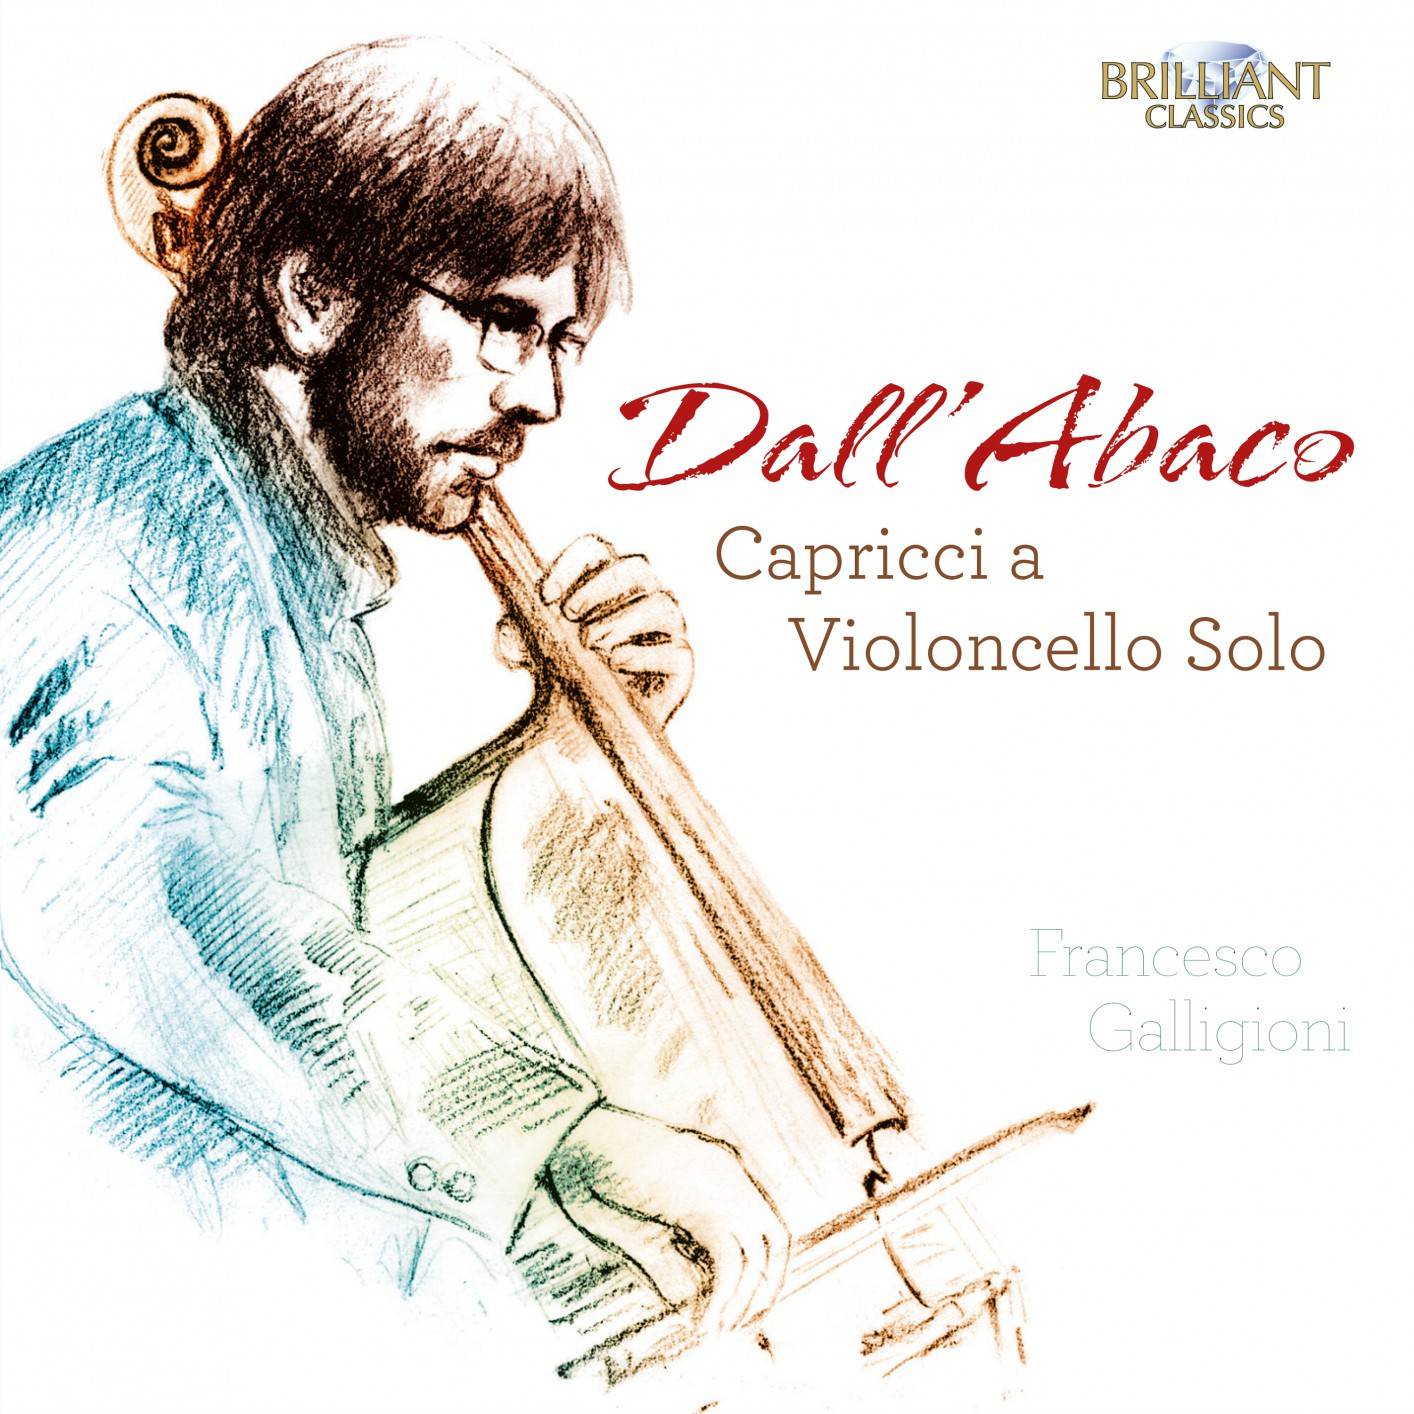 Francesco Galligioni - Dall’Abaco: Capricci a Violoncello Solo (2018) [FLAC 24bit/88,2kHz]